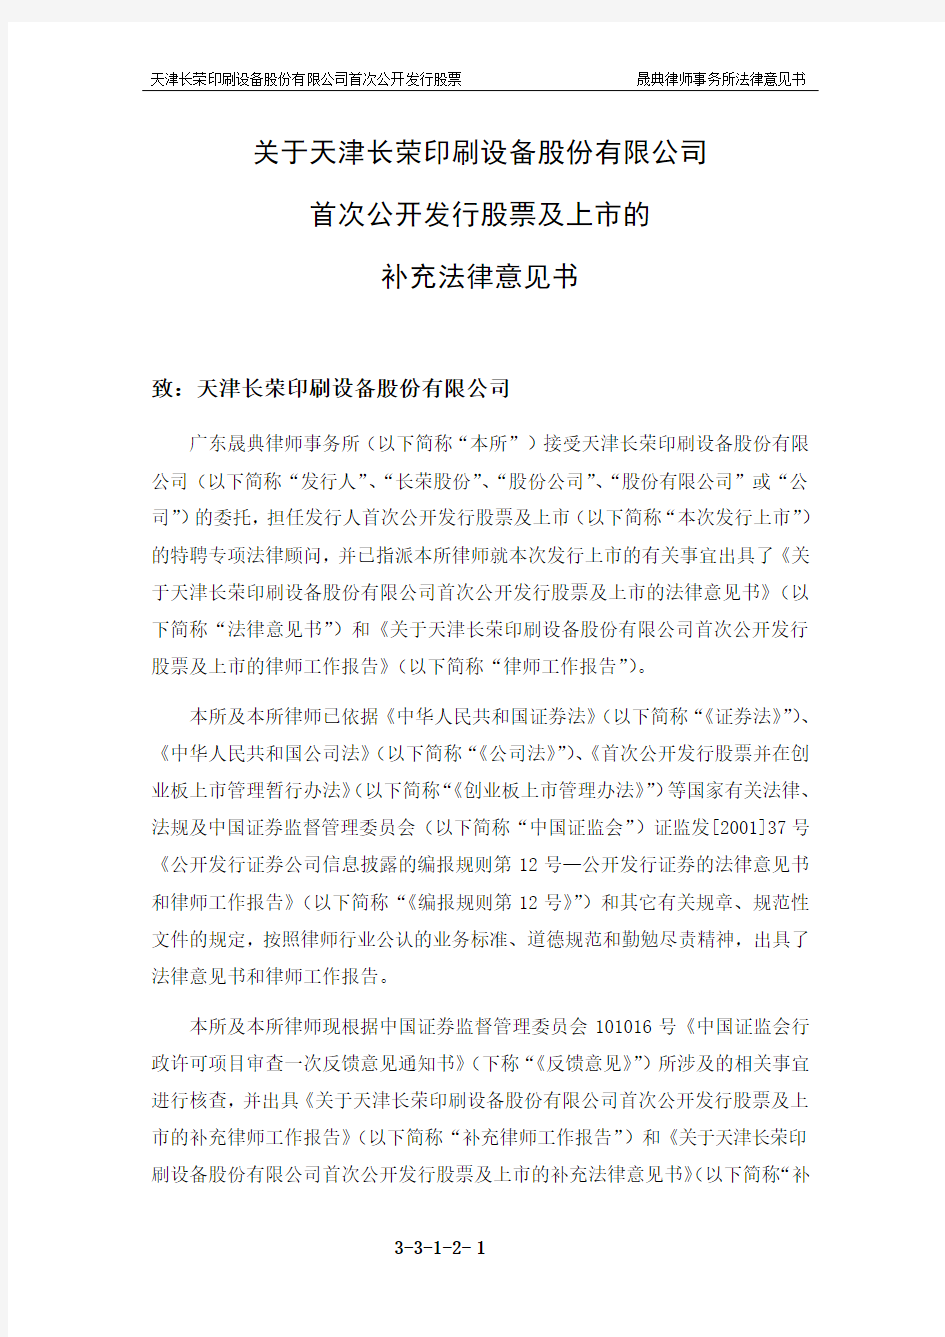 长荣股份：关于公司首次公开发行股票及上市的补充法律意见书一 2011-03-11